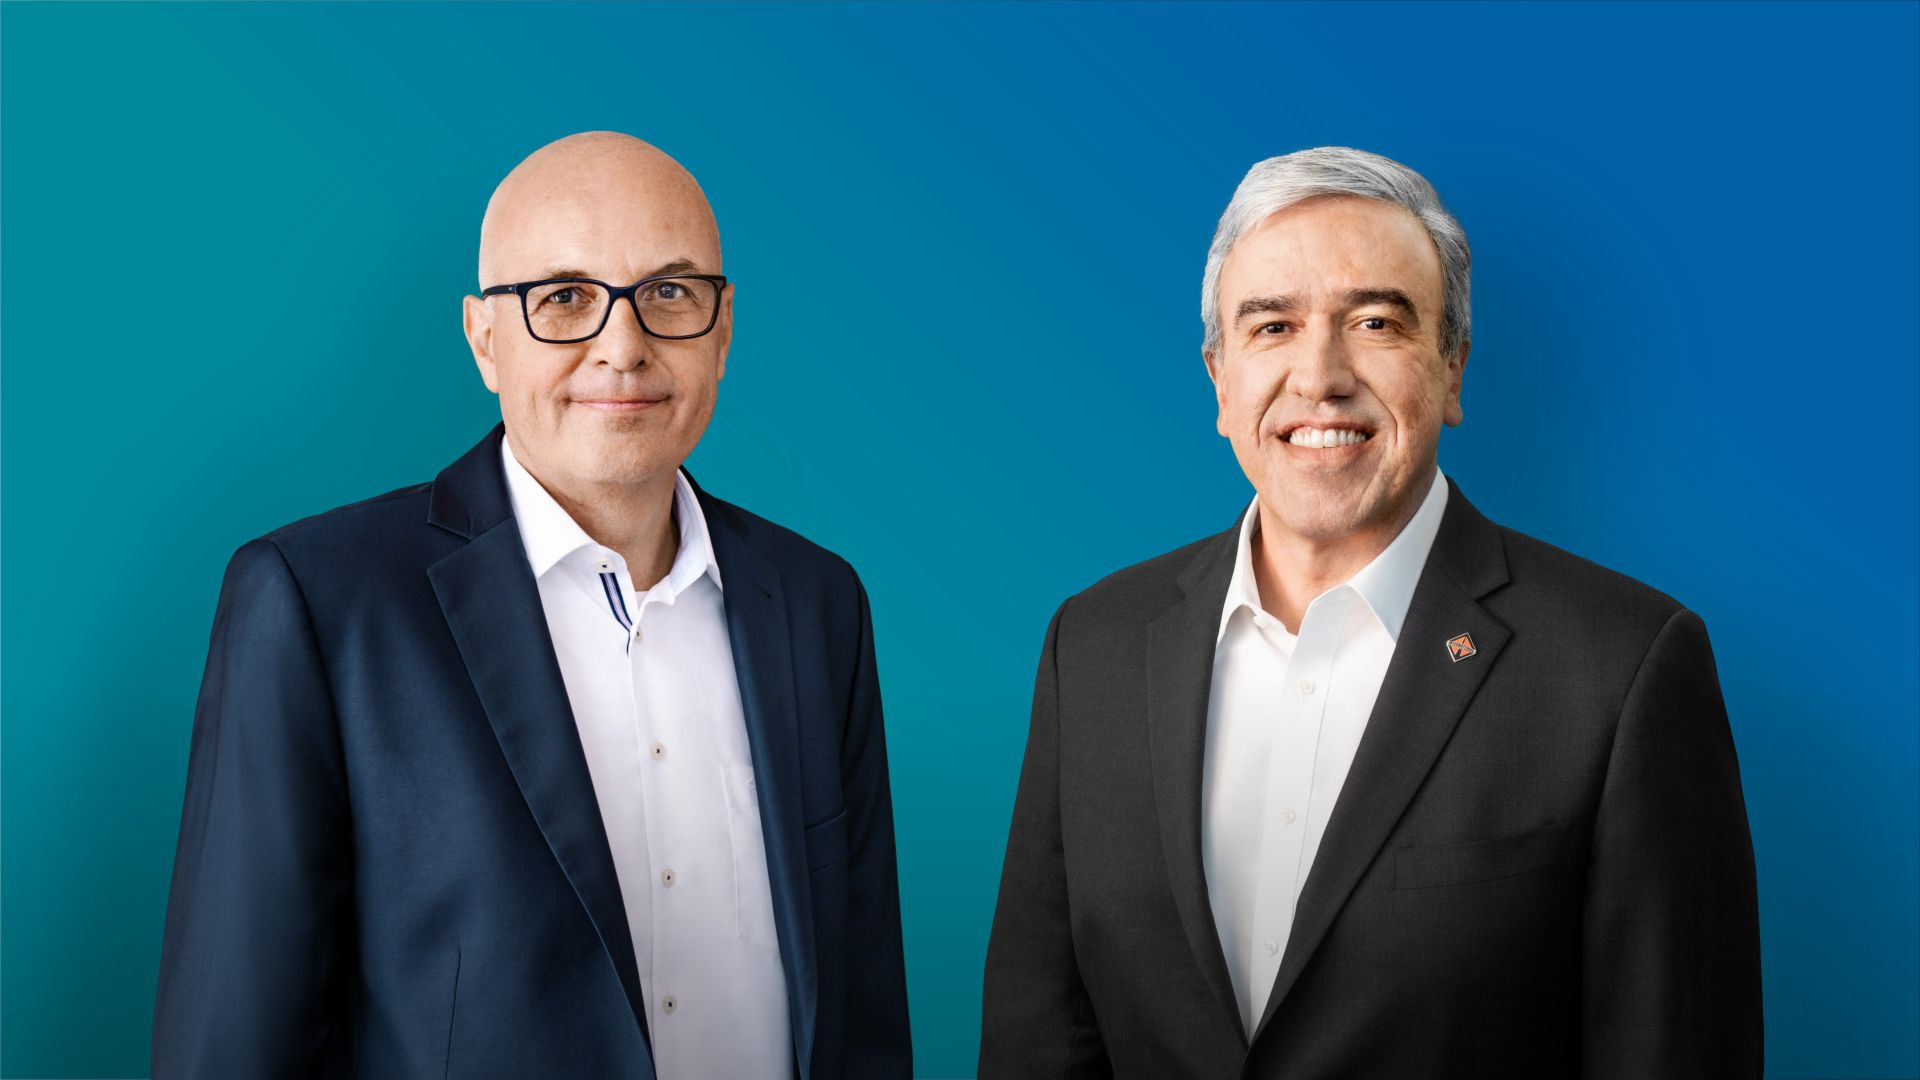 Bild von Matthias Gründler (CEO TRATON SE, links) und Persio Lisboa (CEO Navistar Inc., rechts) vor einem blauen Hintergrund